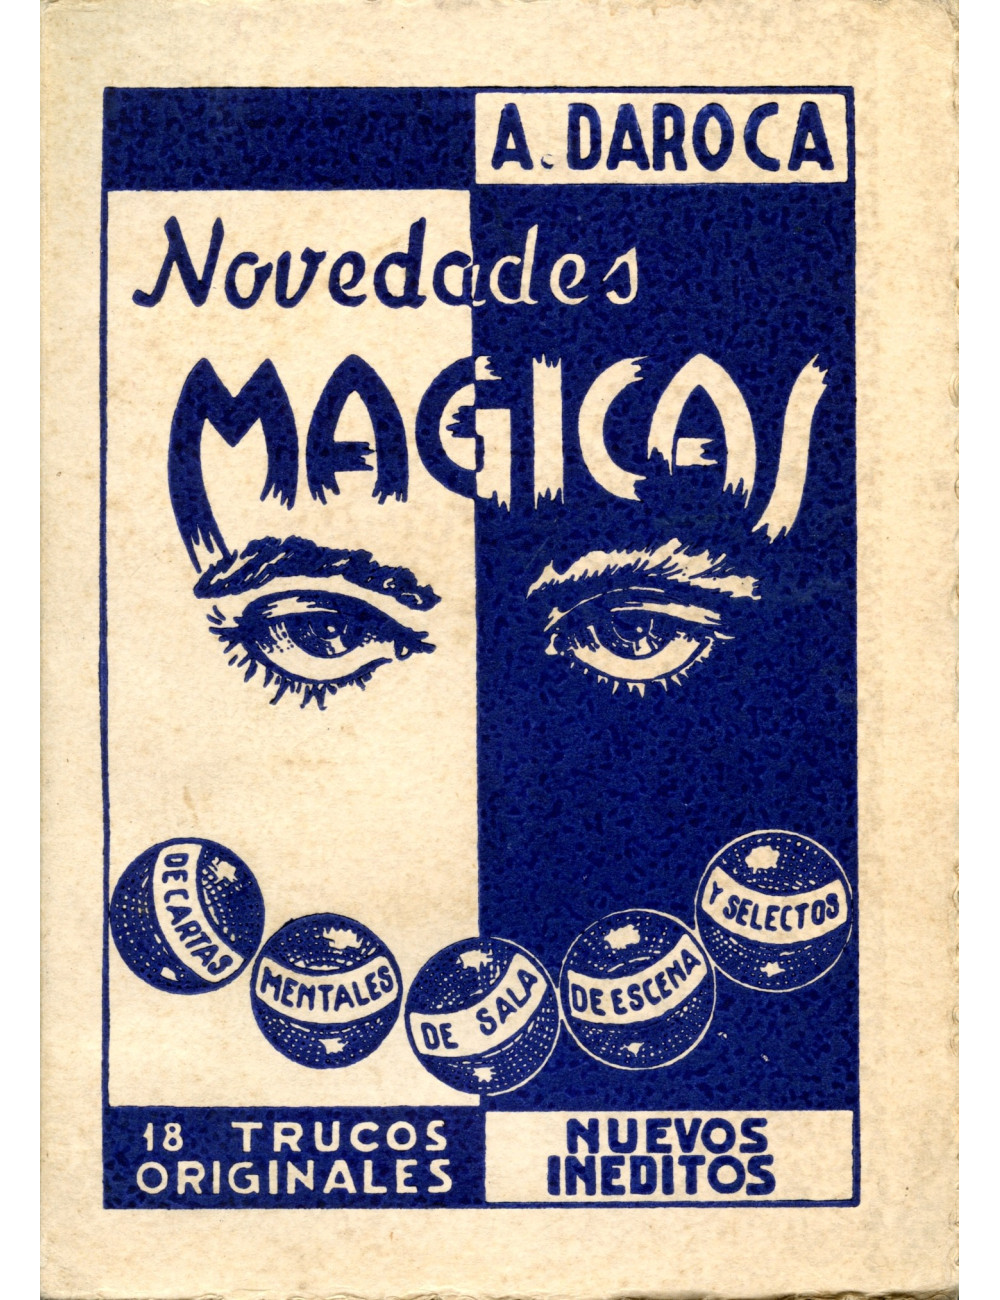 NOVEDADES MAGICAS (A. Daroca)